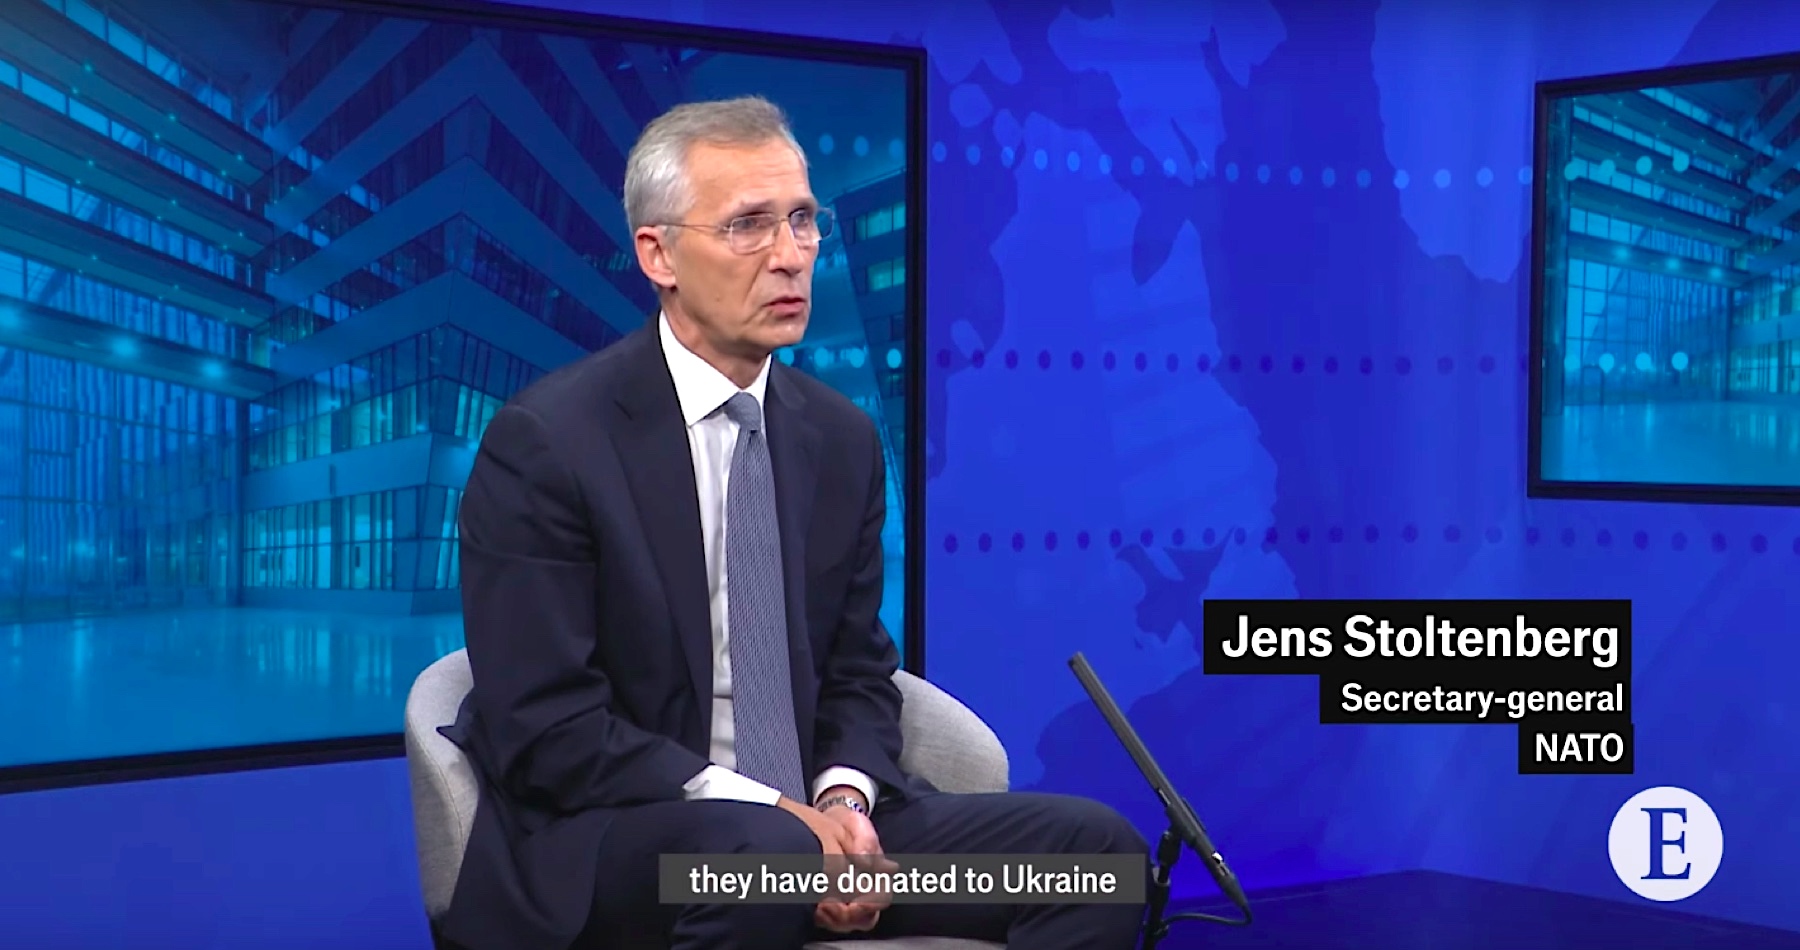 VIDEO: Šéf NATO Stoltenberg vyzýva členské štáty Severoatlantickej aliancie povoliť Ukrajine útoky západnými zbraňami na územie Ruska. Nemecký kancelár Scholz takúto možnosť odmieta, ale naďalej sníva, že Ukrajina s pomocou Západu dokáže Rusko poraziť. Situácia sa skomplikovala ešte viac, pretože Zelenskému vypršalo funkčné obdobie a nové prezidentské voľby ukrajinský diktátor odmieta vypísať. Putin v tejto súvislosti poukazuje na to, že o mierovom urovnaní konfliktu tak nemá s kým rokovať, keďže súčasný vodca kyjevského režimu nie je už viac legitímnym predstaviteľom Ukrajiny